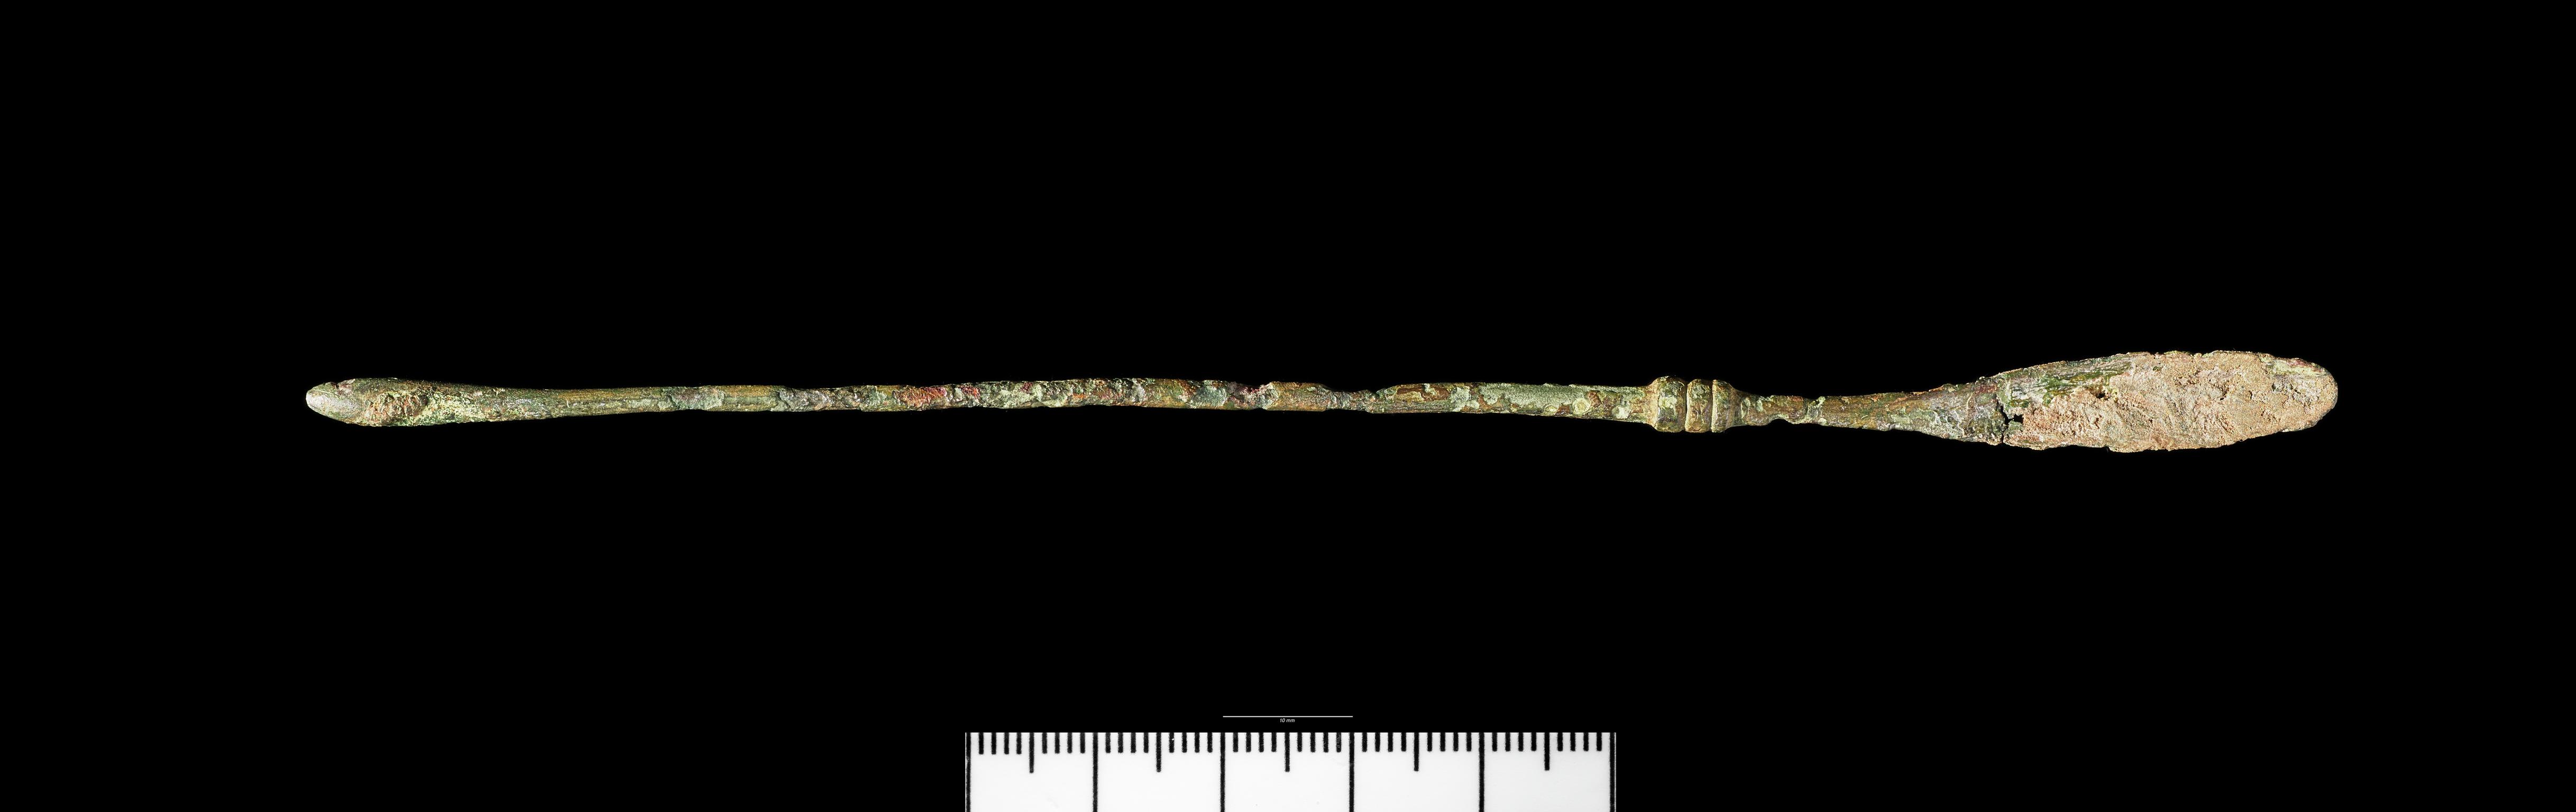 Roman copper alloy spatula probe